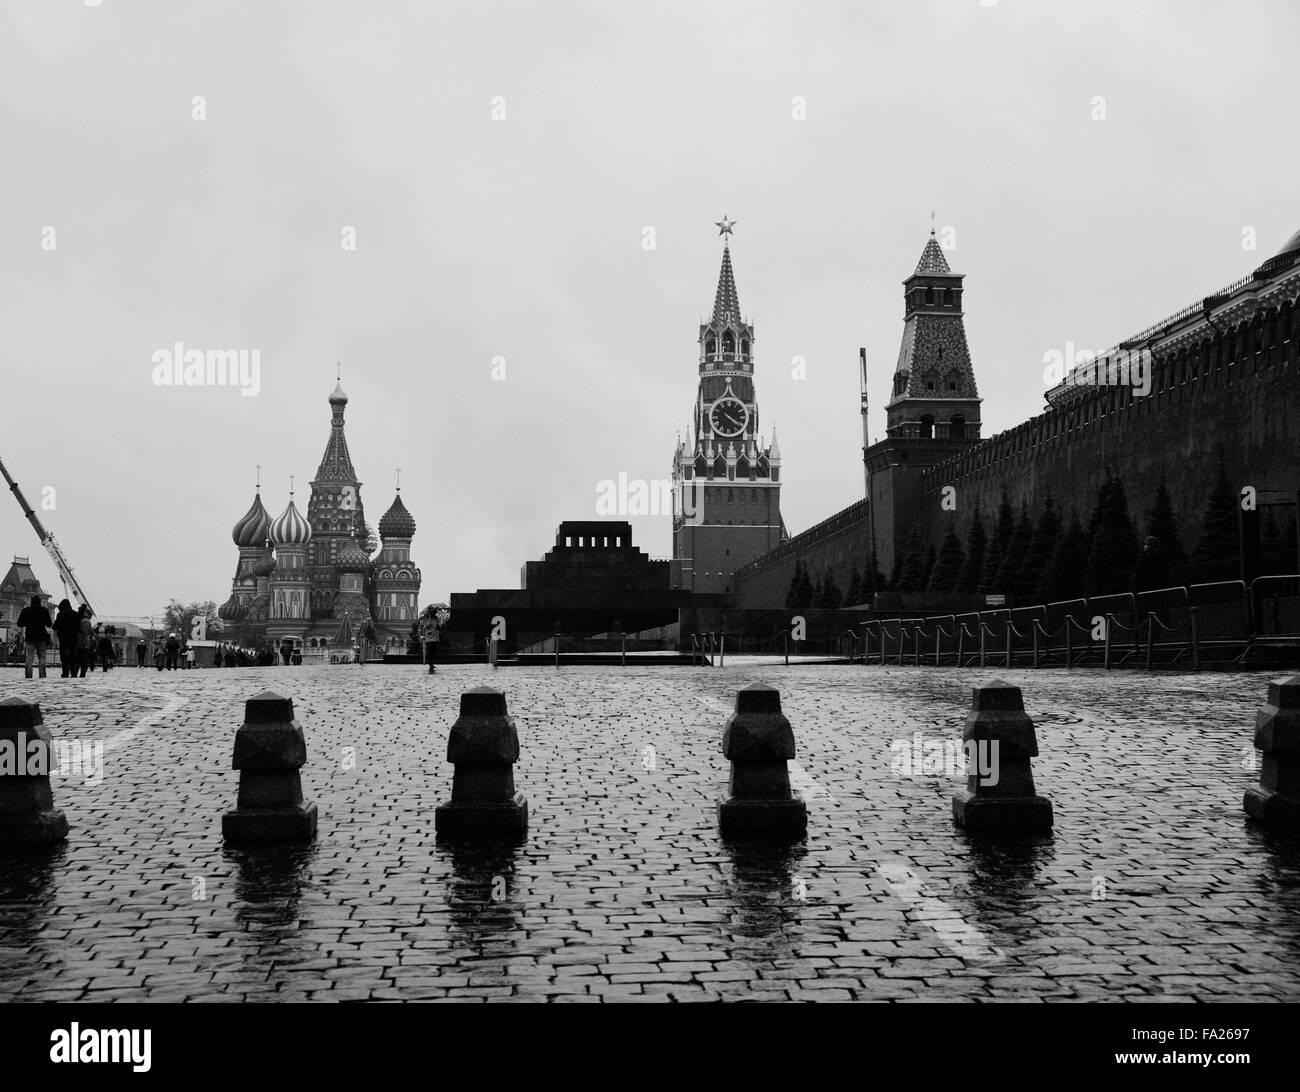 Photo noir et blanc de la Place Rouge à Moscou avec Spasskaya Bashnya, le mausolée de Lénine, et la cathédrale de Saint Basil Banque D'Images